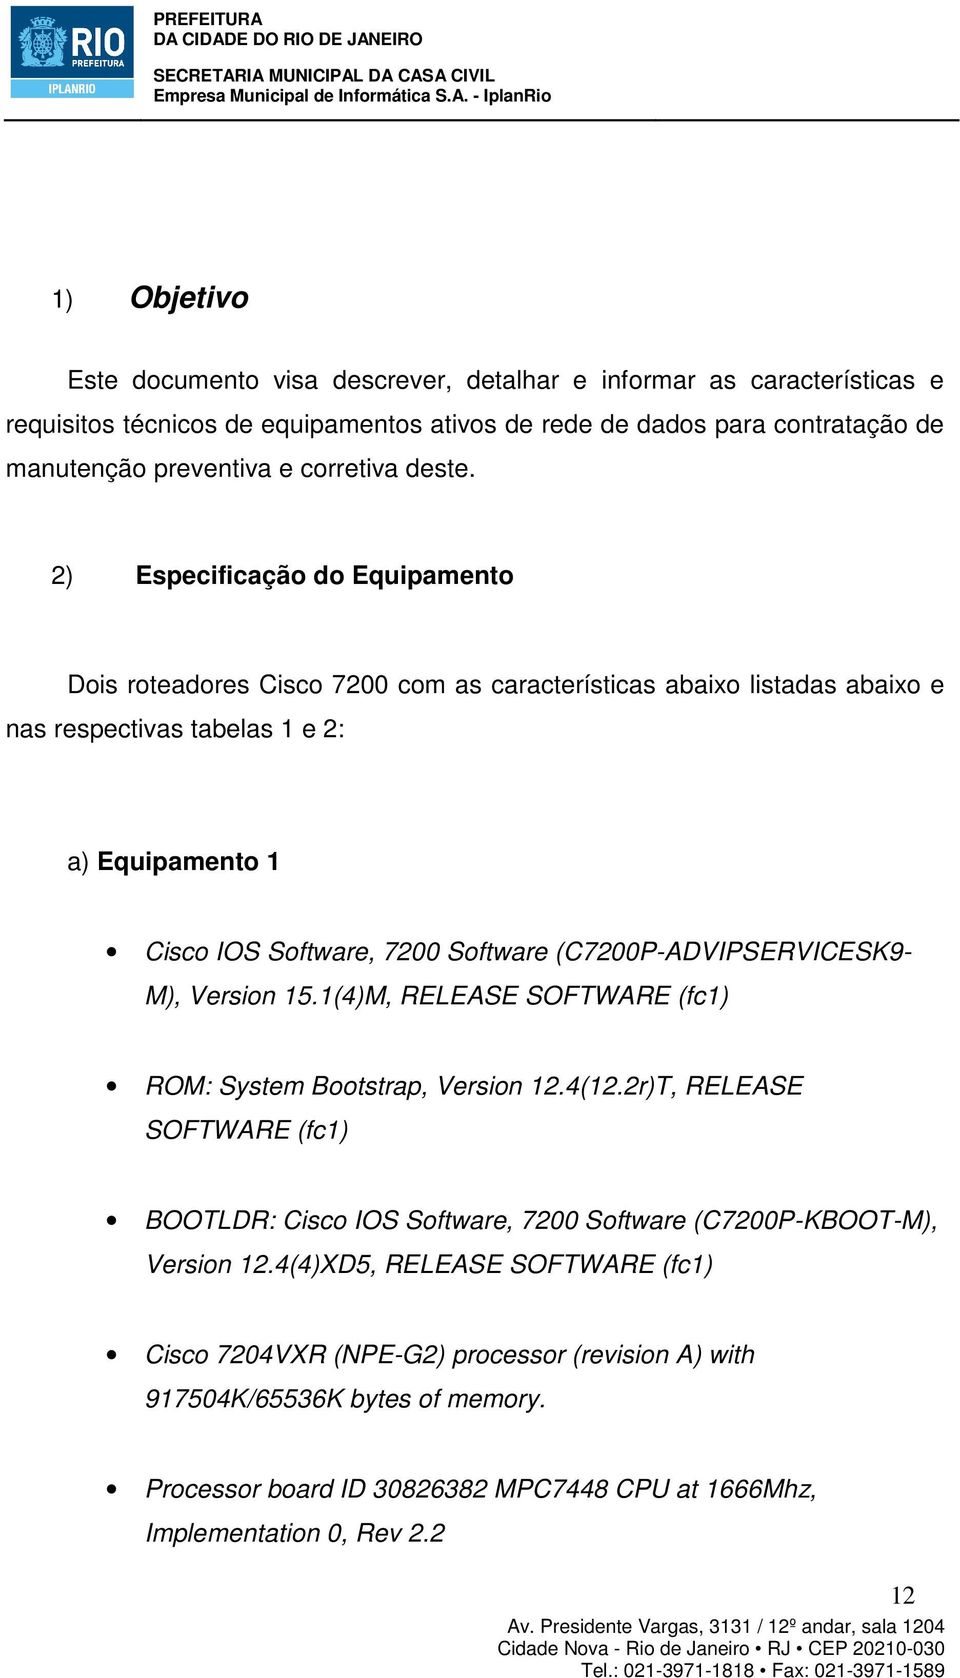 2) Especificação do Equipamento Dois roteadores Cisco 7200 com as características abaixo listadas abaixo e nas respectivas tabelas 1 e 2: a) Equipamento 1 Cisco IOS Software, 7200 Software